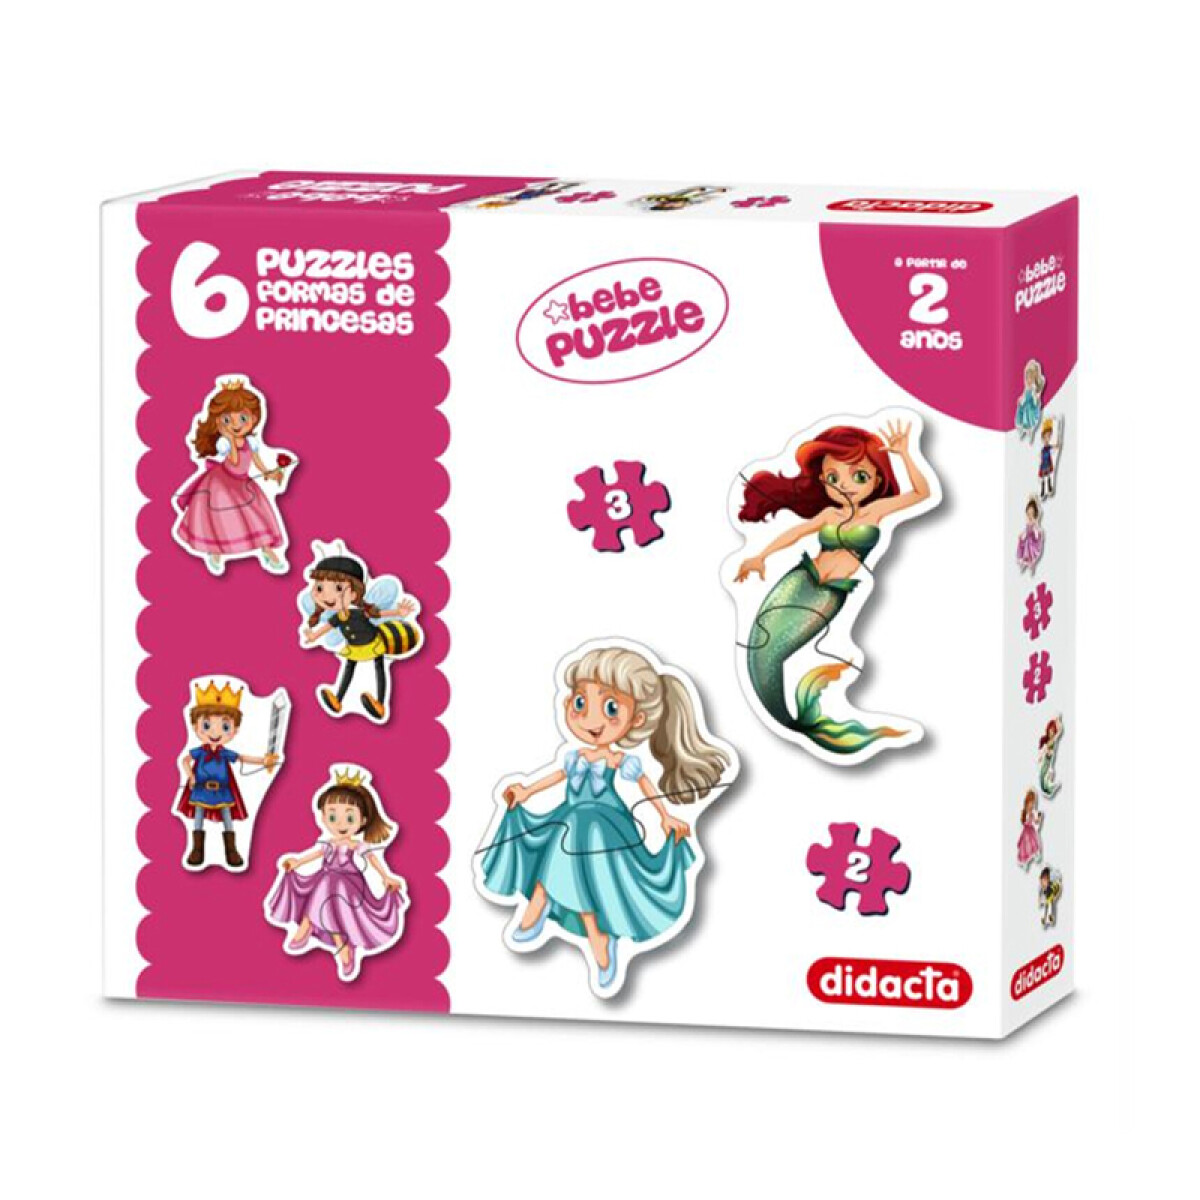 Bebe Puzzle 6 Puzzles Con Formas - Princesas 